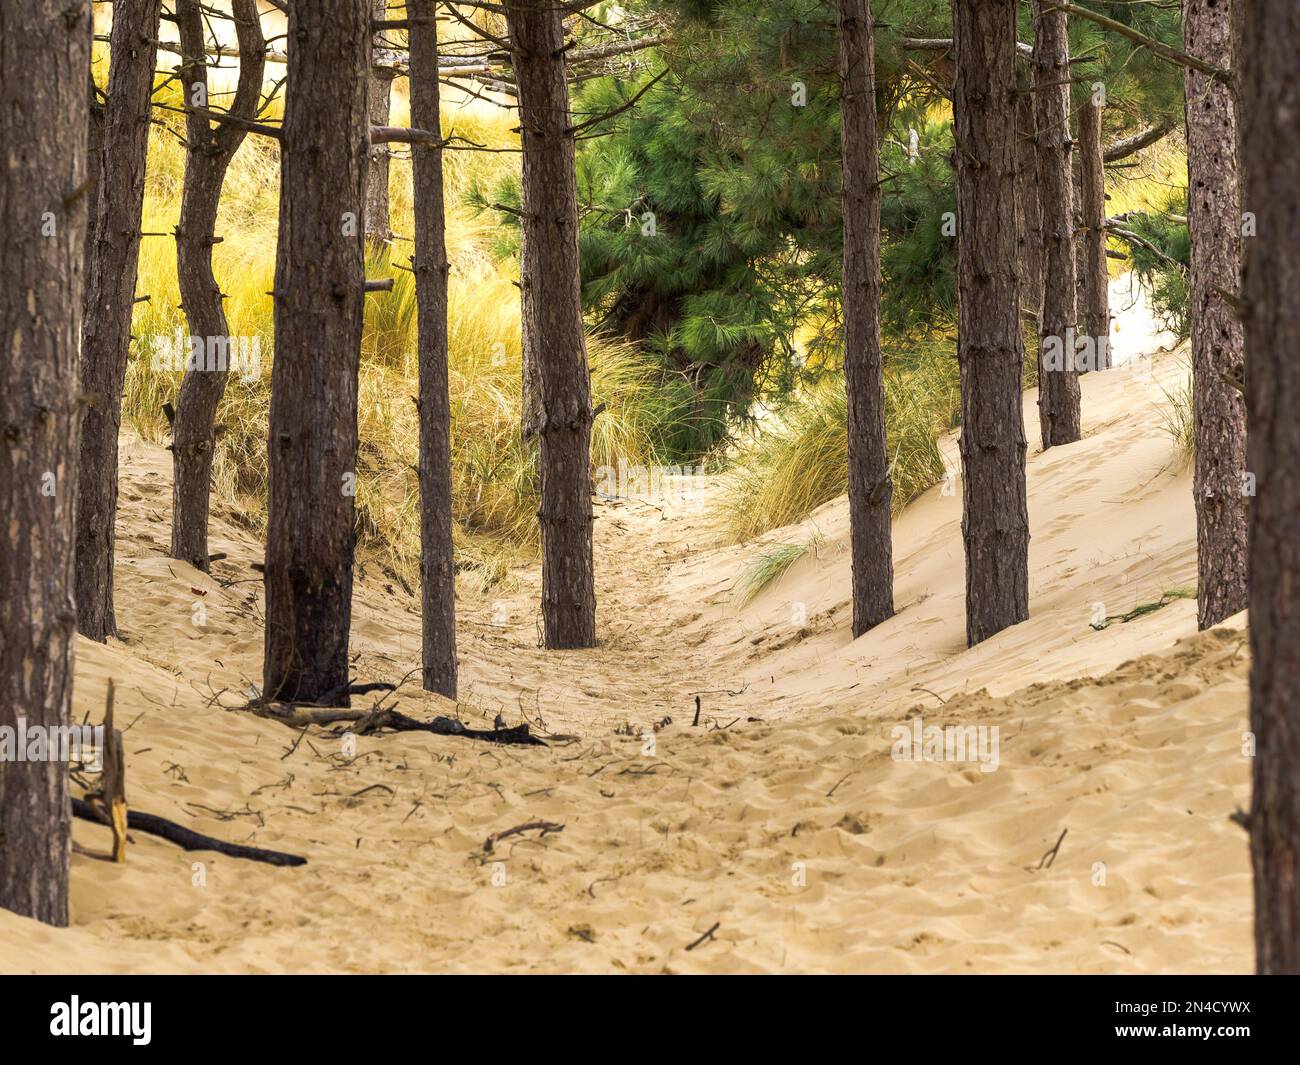 Dune de sable se déplaçant dans le vent avec des pins forestiers enterrés sous les sables mouvants Banque D'Images